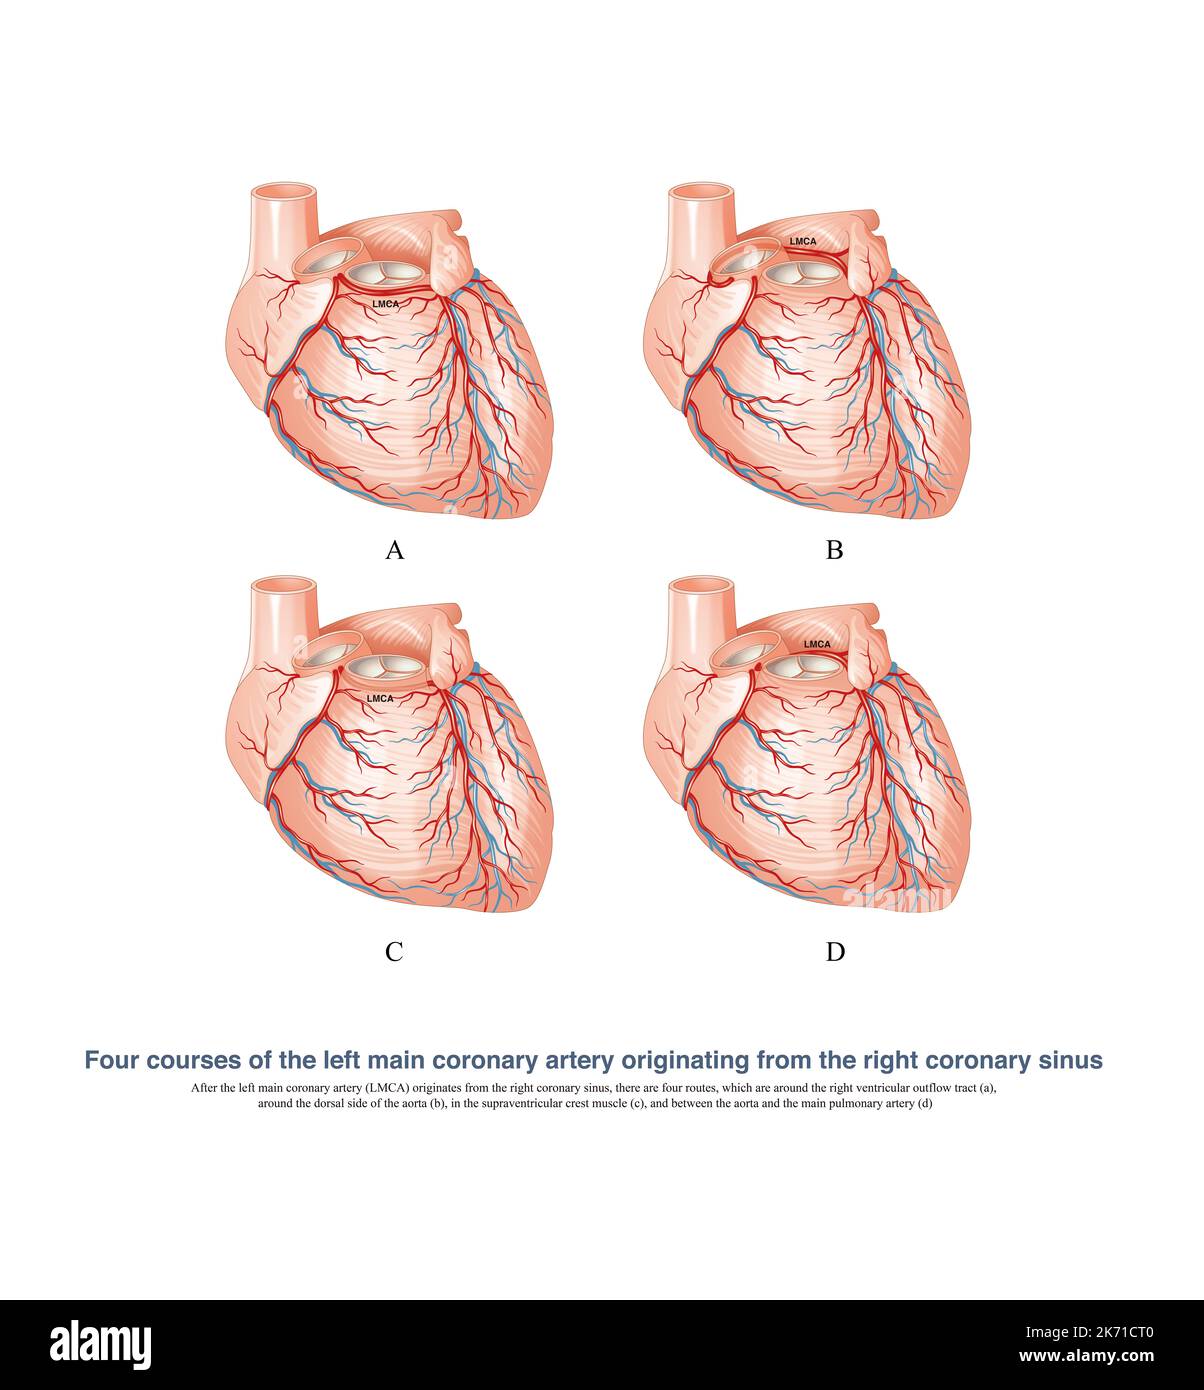 L'arteria coronaria sinistra anormale è originata dal seno coronarico destro, che è una delle cause di morte improvvisa. Foto Stock